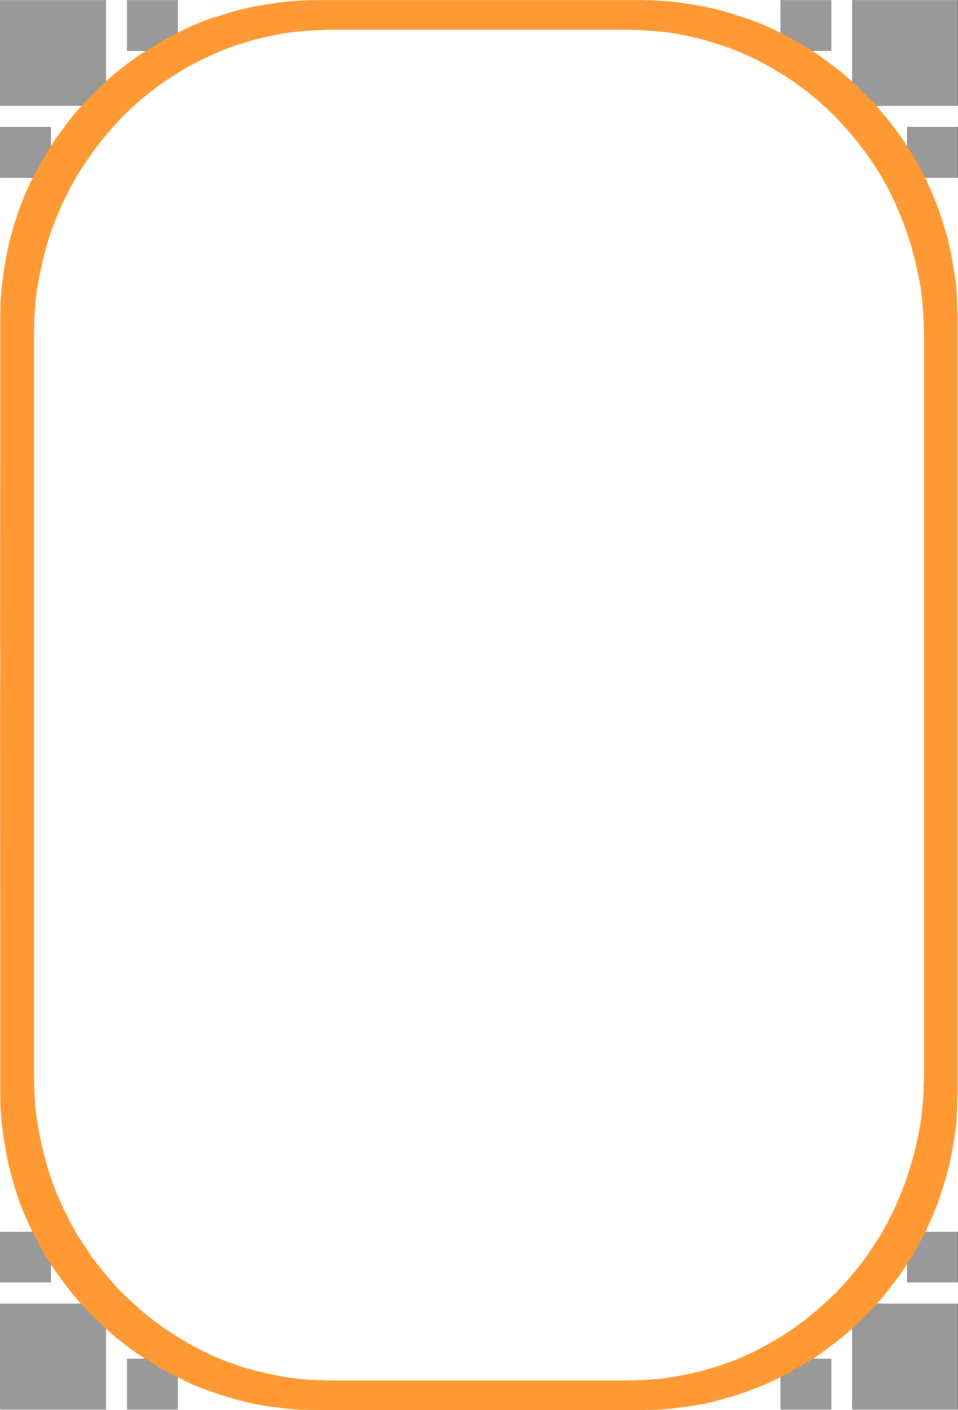 Square Orange Frame PNG Image